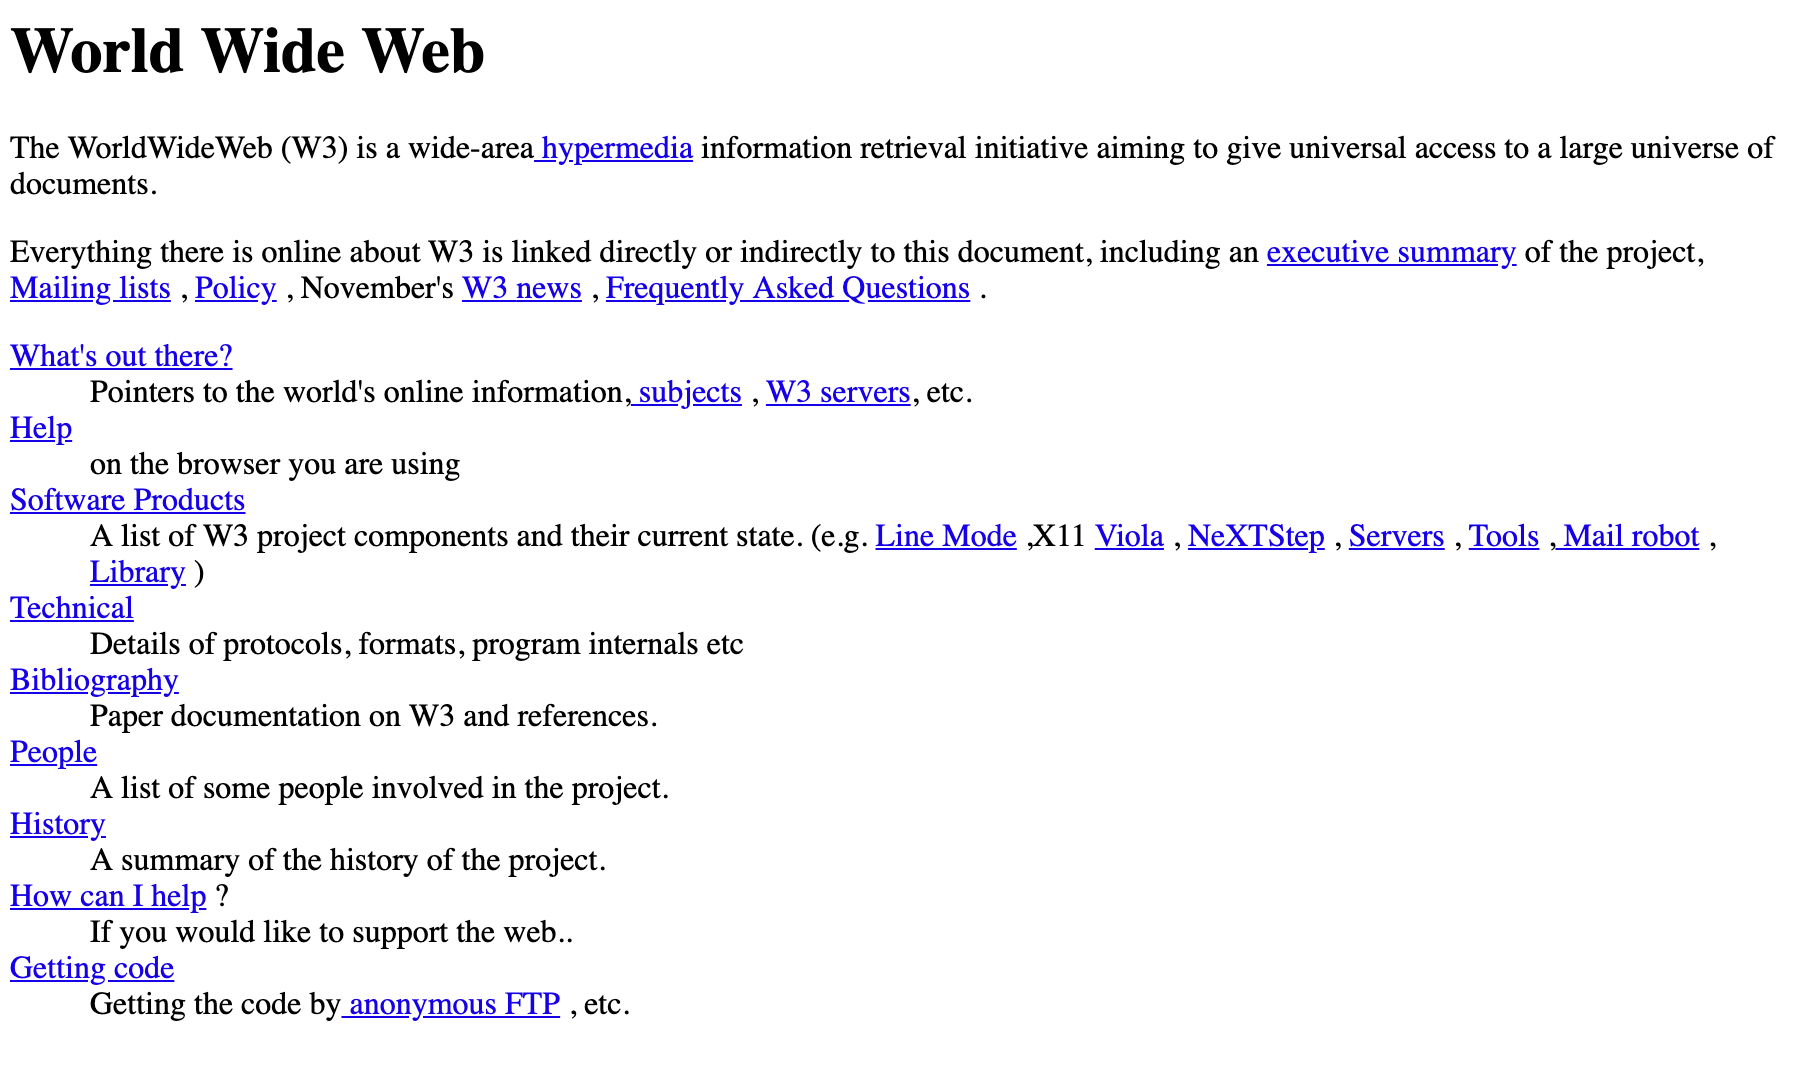 Bild der ersten 1991 erstellten Internetseite